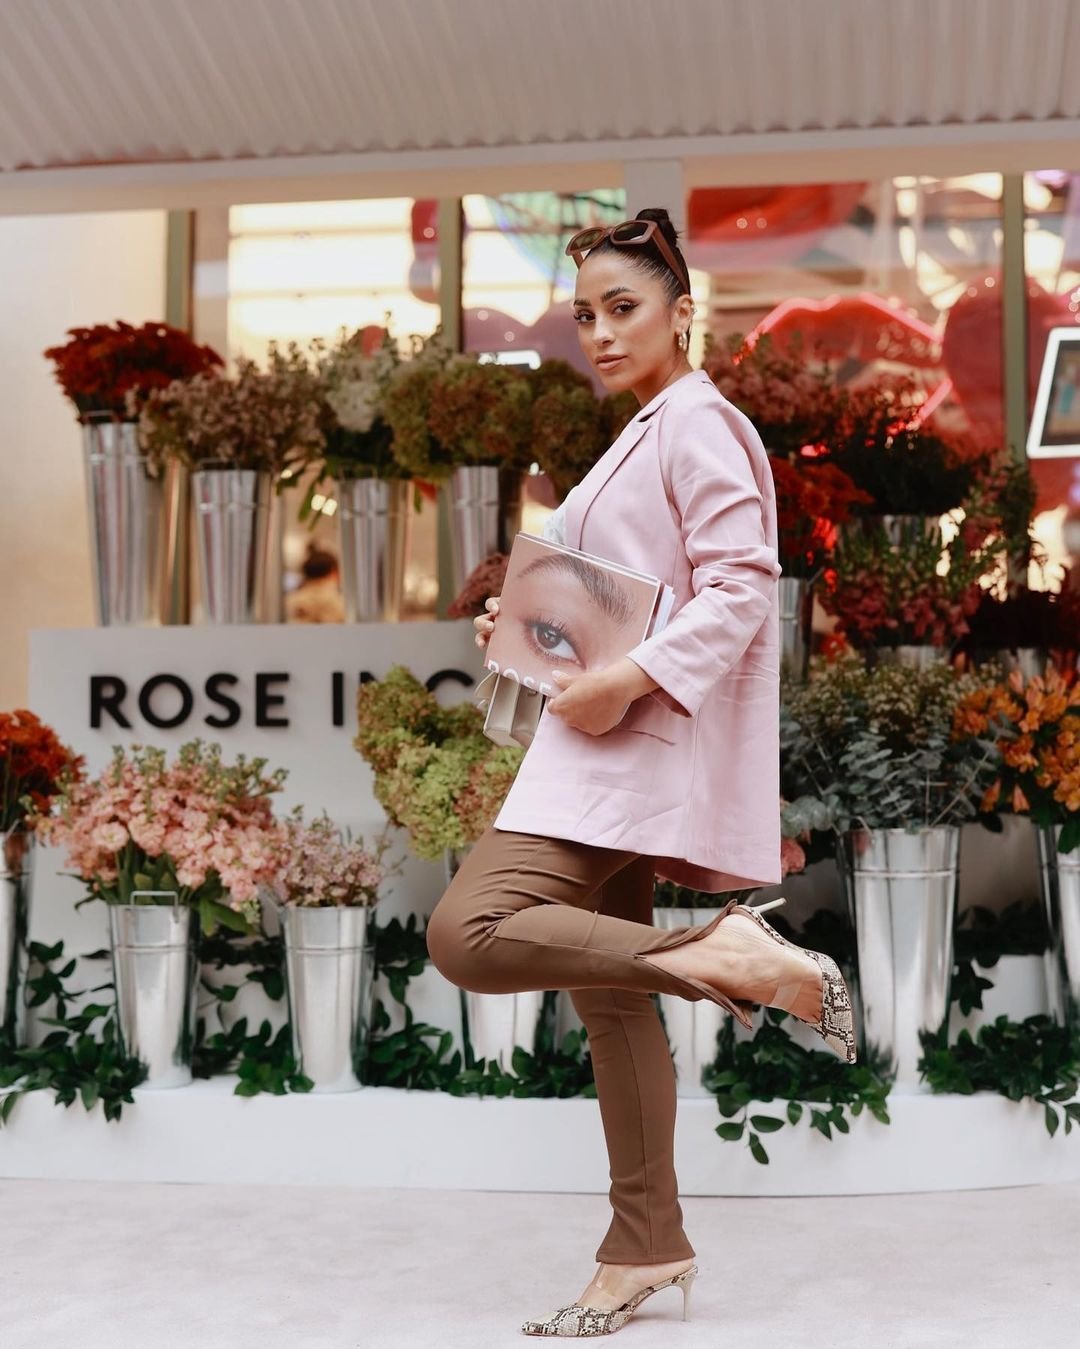 Rose Inc. x  Sephora Event  SoHo, NYC